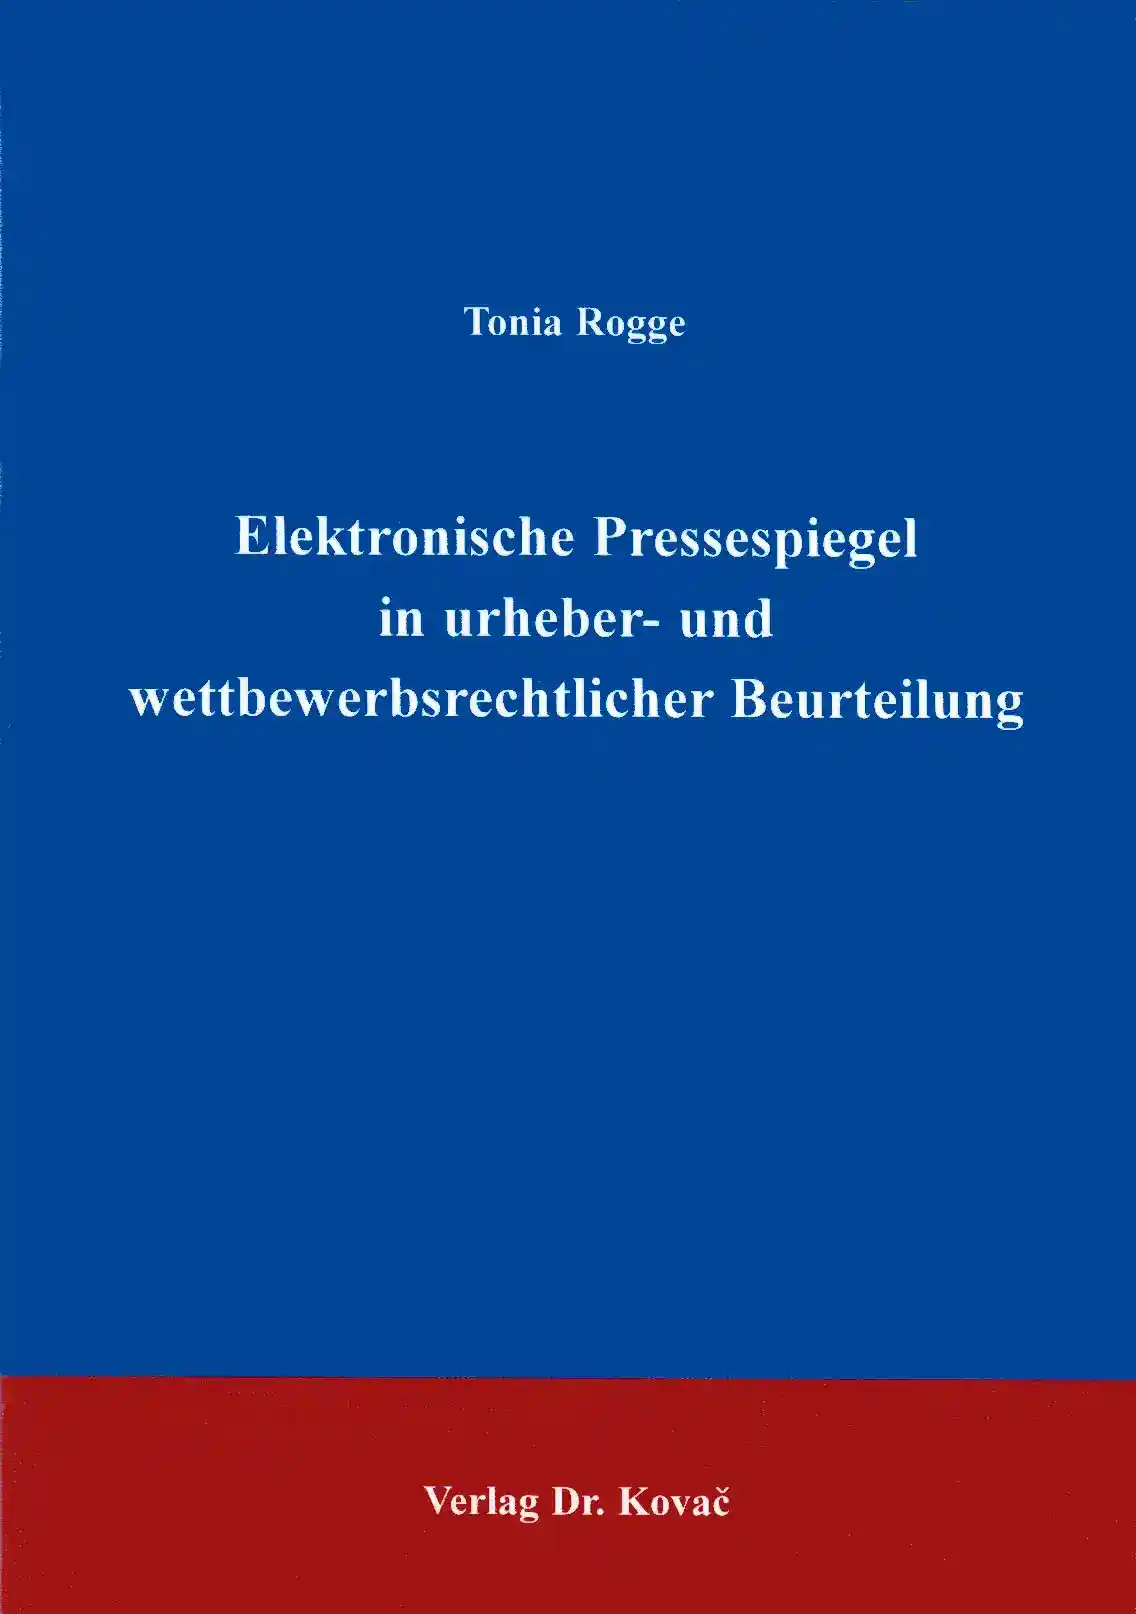 Doktorarbeit: Elektronische Pressespiegel in urheber- und wettbewerbsrechtlicher Beurteilung